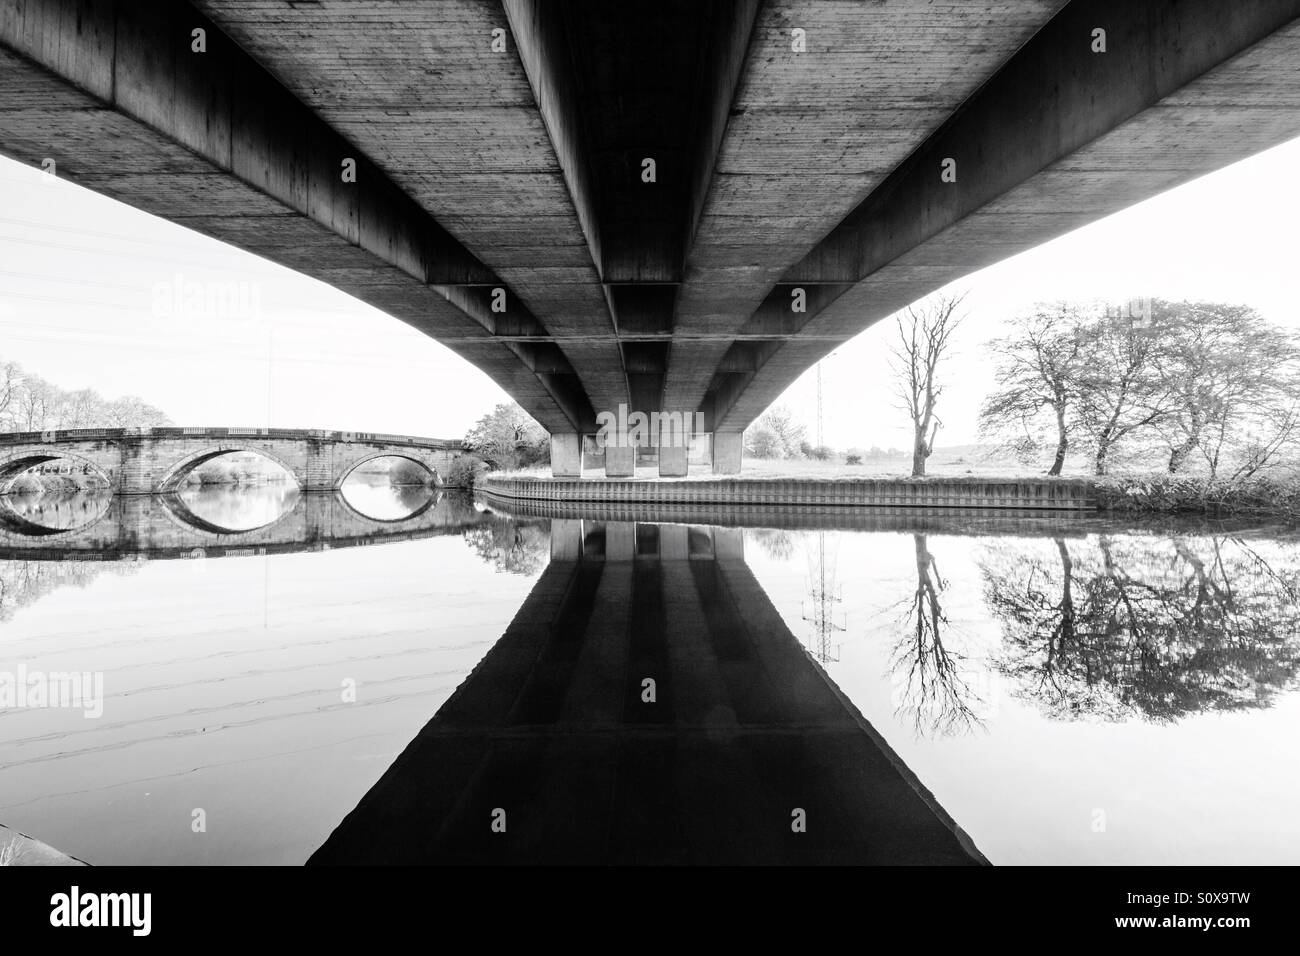 Au-dessous d'un pont moderne avec un pont plus ancien dans la distance. Vieux et nouveaux ponts en noir et blanc. Banque D'Images